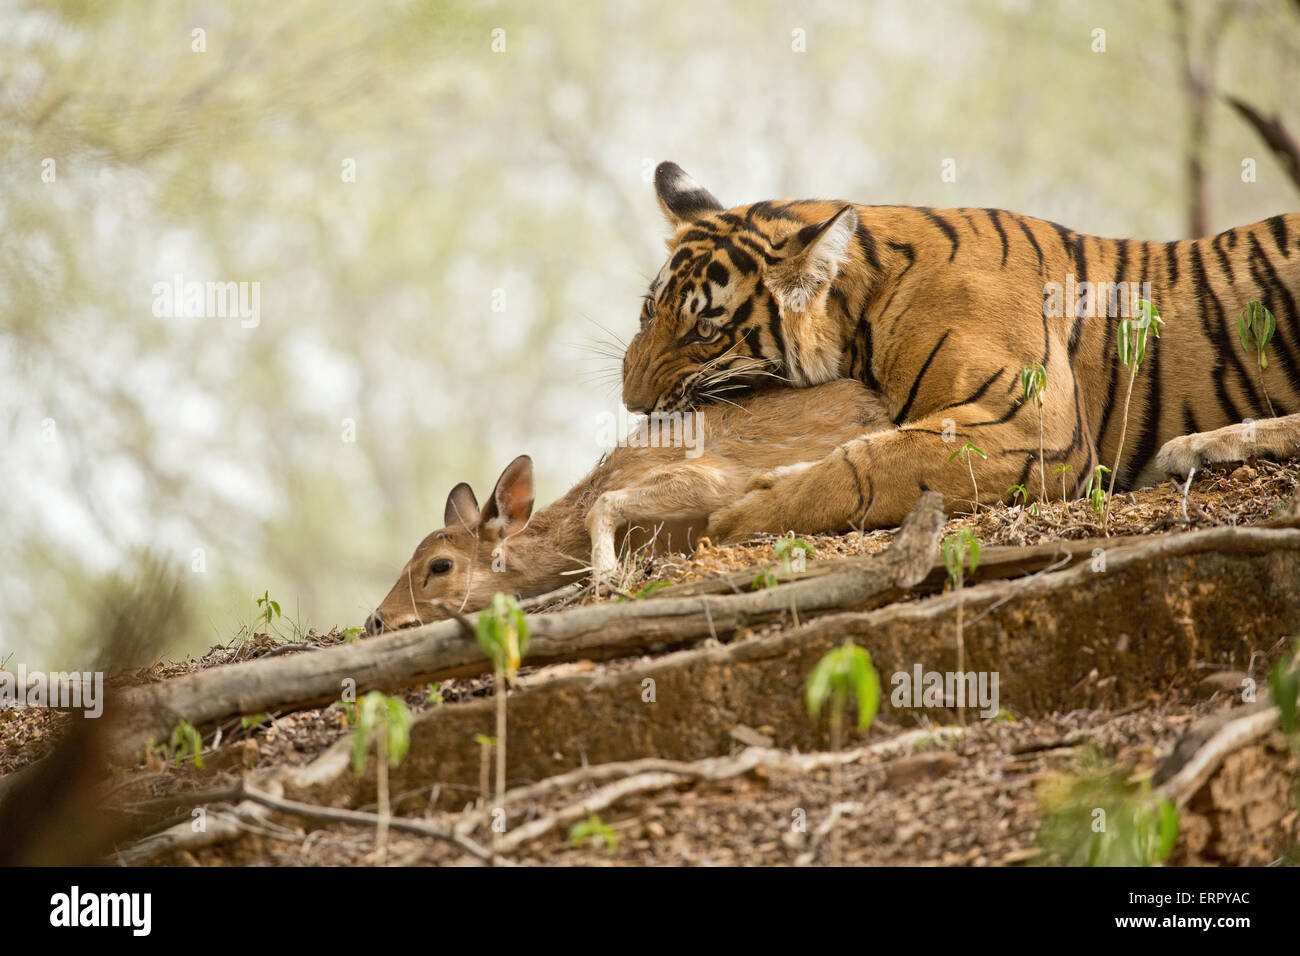 A tiger captures its prey an eats it too Stock Photo